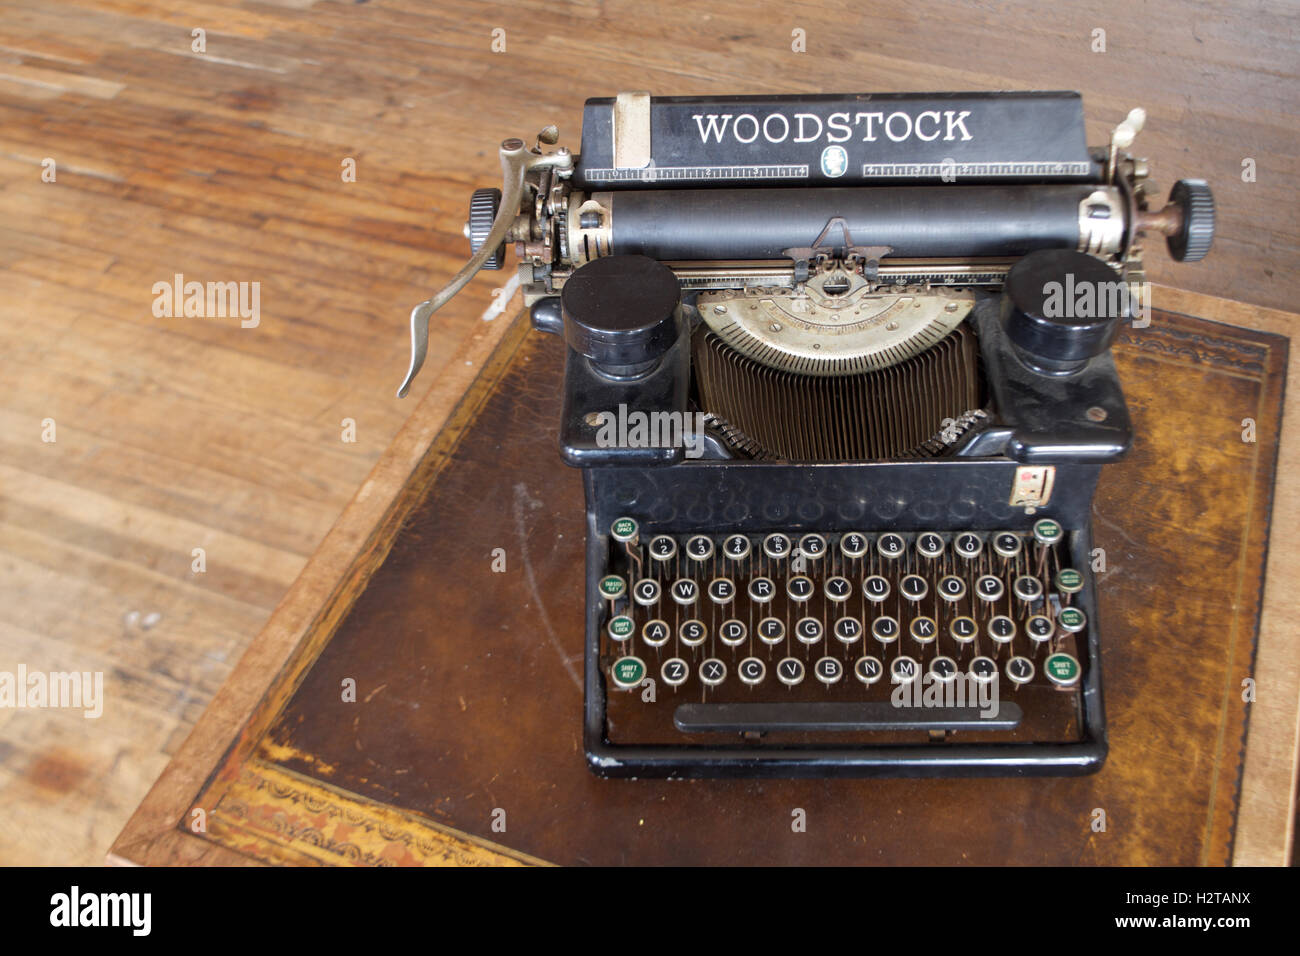 Antique Typewriter, Vintage typewriter, old typewriter Stock Photo